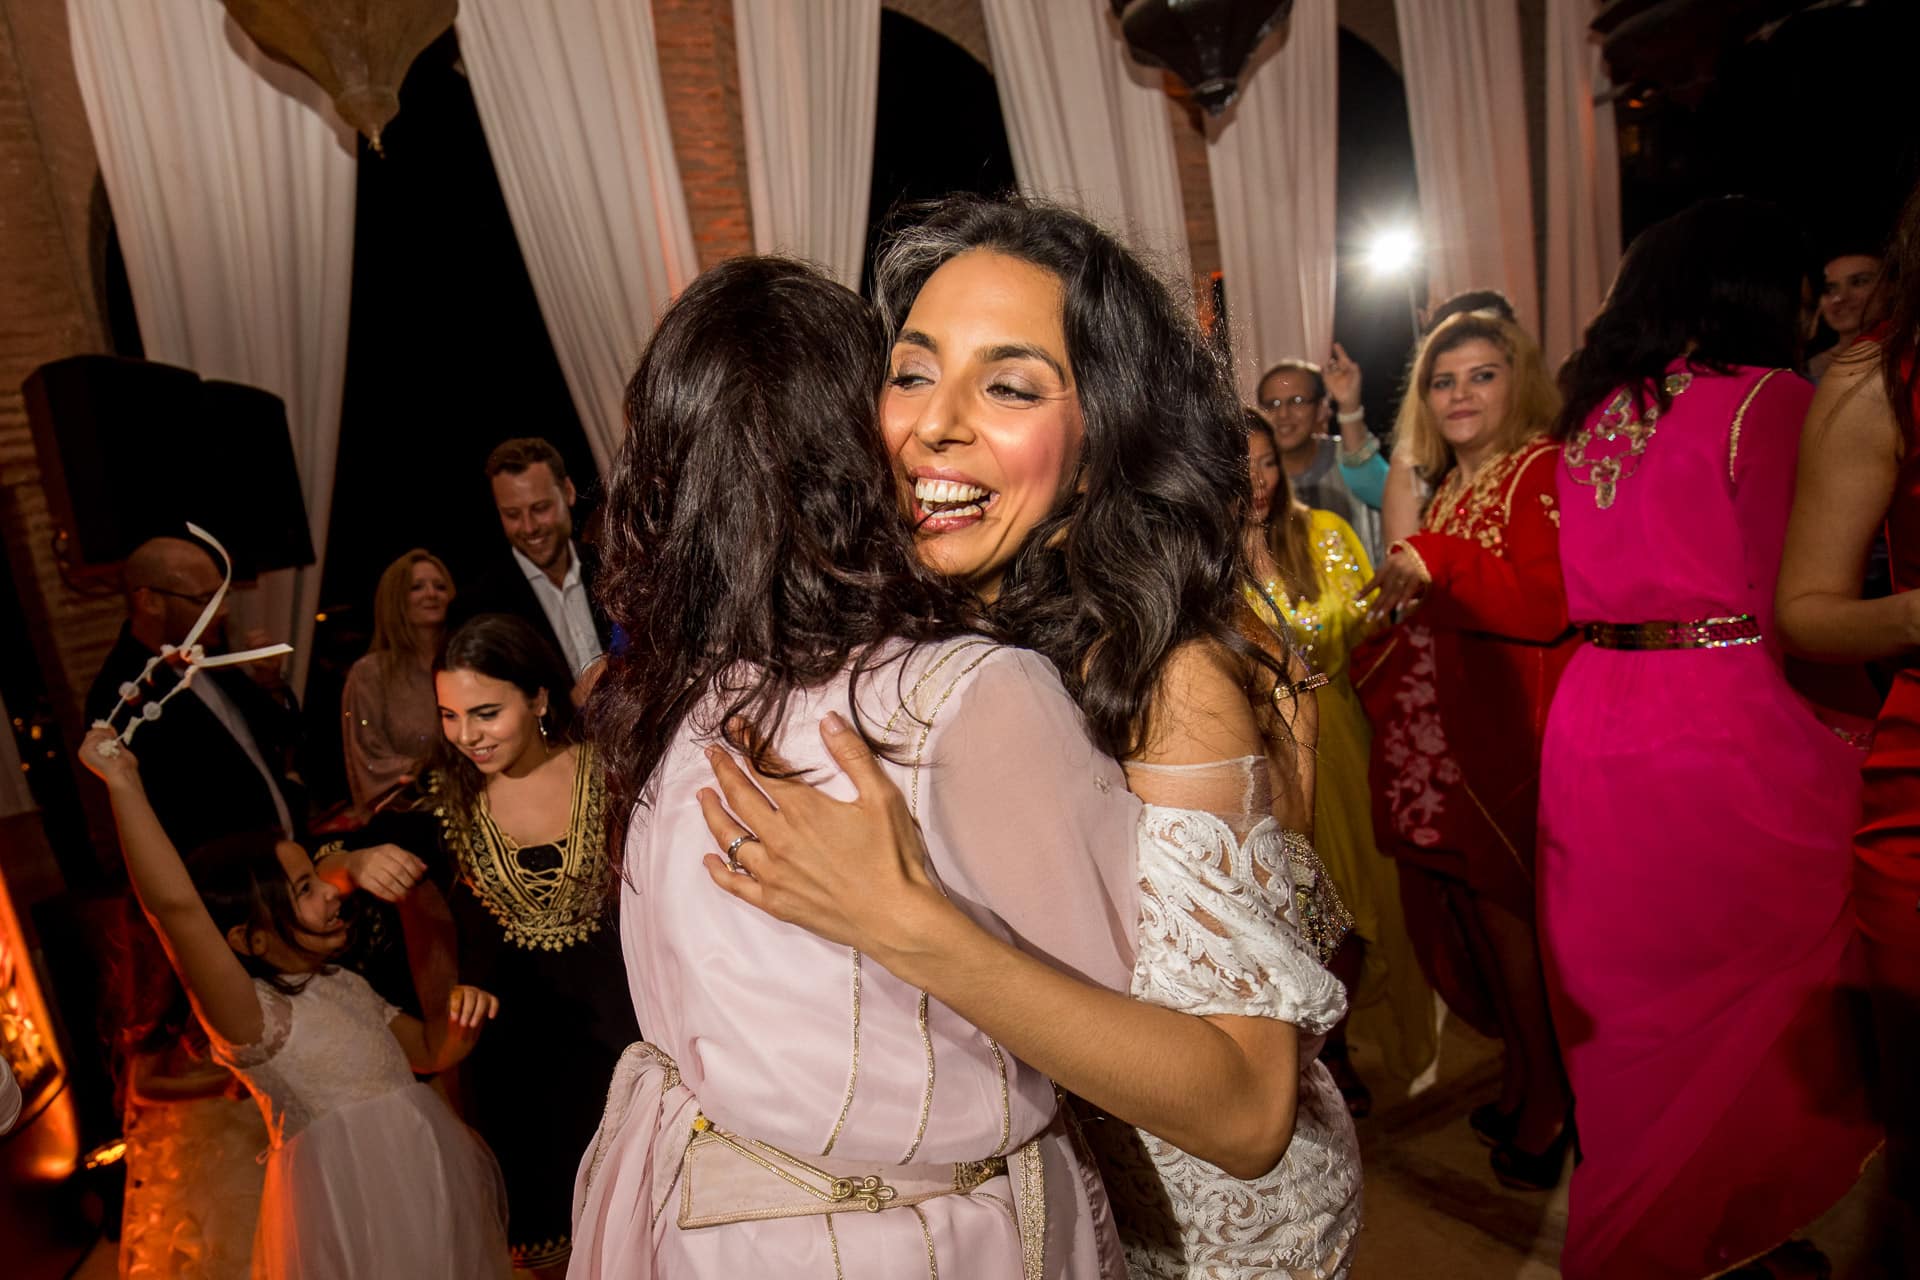 bride hugging bridesmaid on dance floor